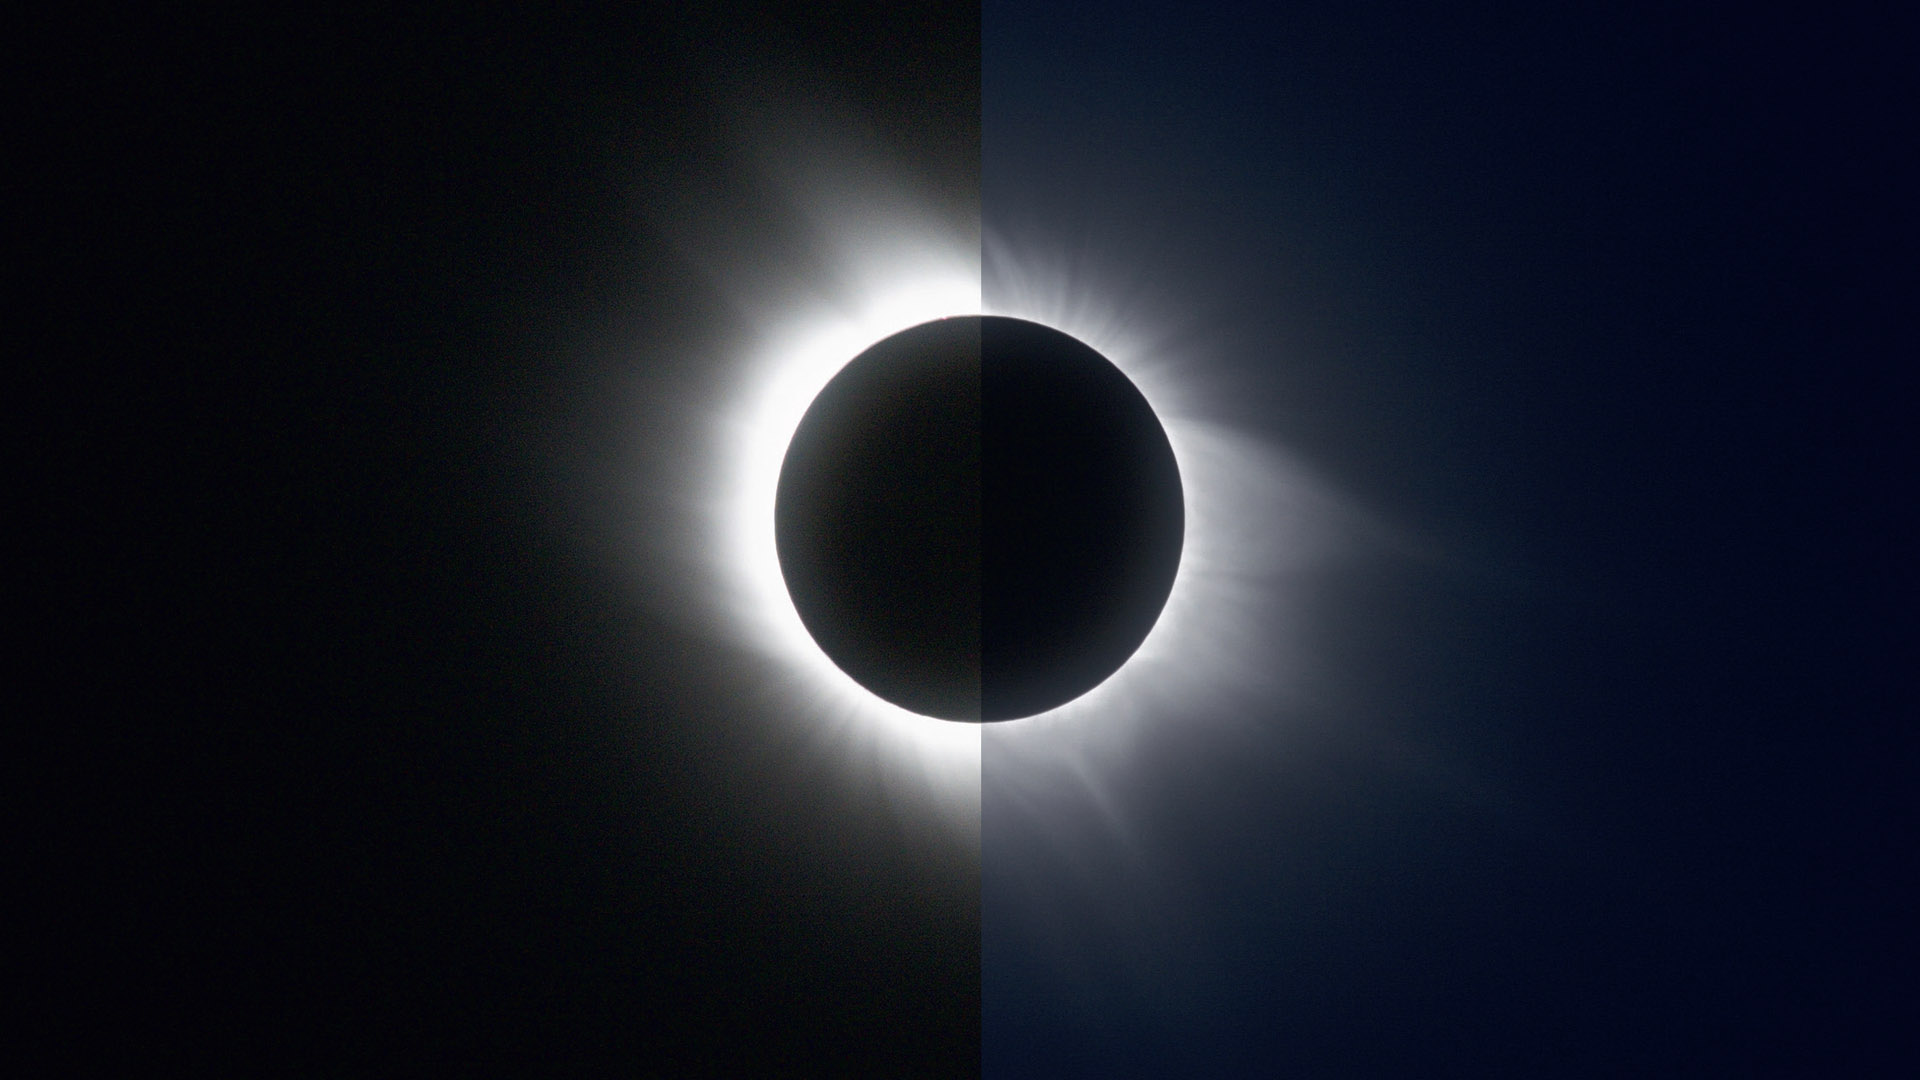 Dwa zdjęcia całkowitego zaćmienia Słońca z roku 2006: po lewej pojedyncza klatka o czasie naświetlania 1/8 sekundy, a po prawej kompozycja HDR ze zdjęć o czasie naświetlania 1/8 do 1/1000 sekundy. M.Weigand